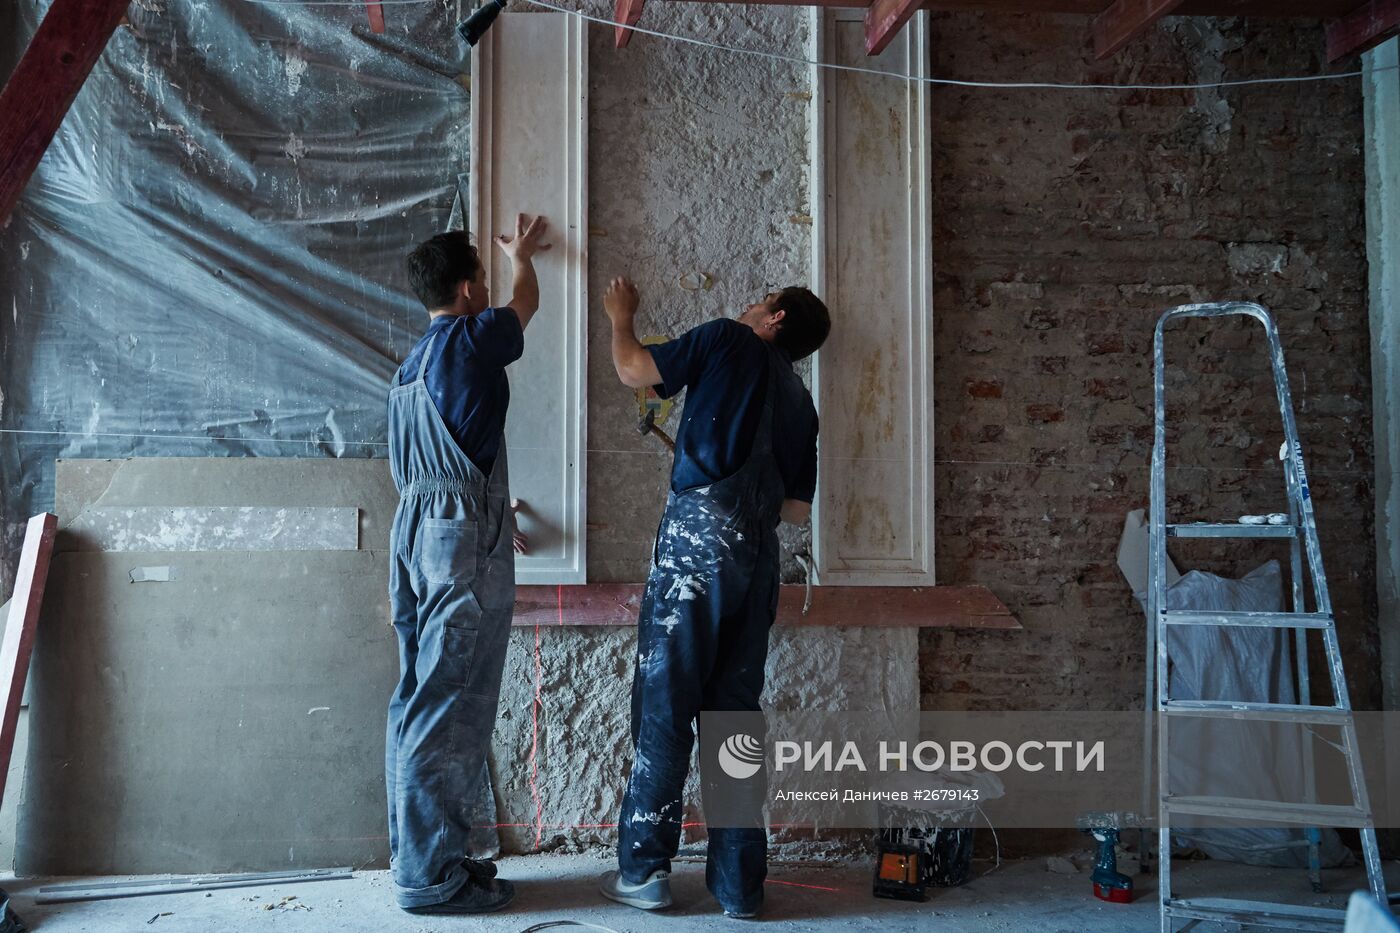 Реставрация интерьеров парадных залов Мраморного дворца